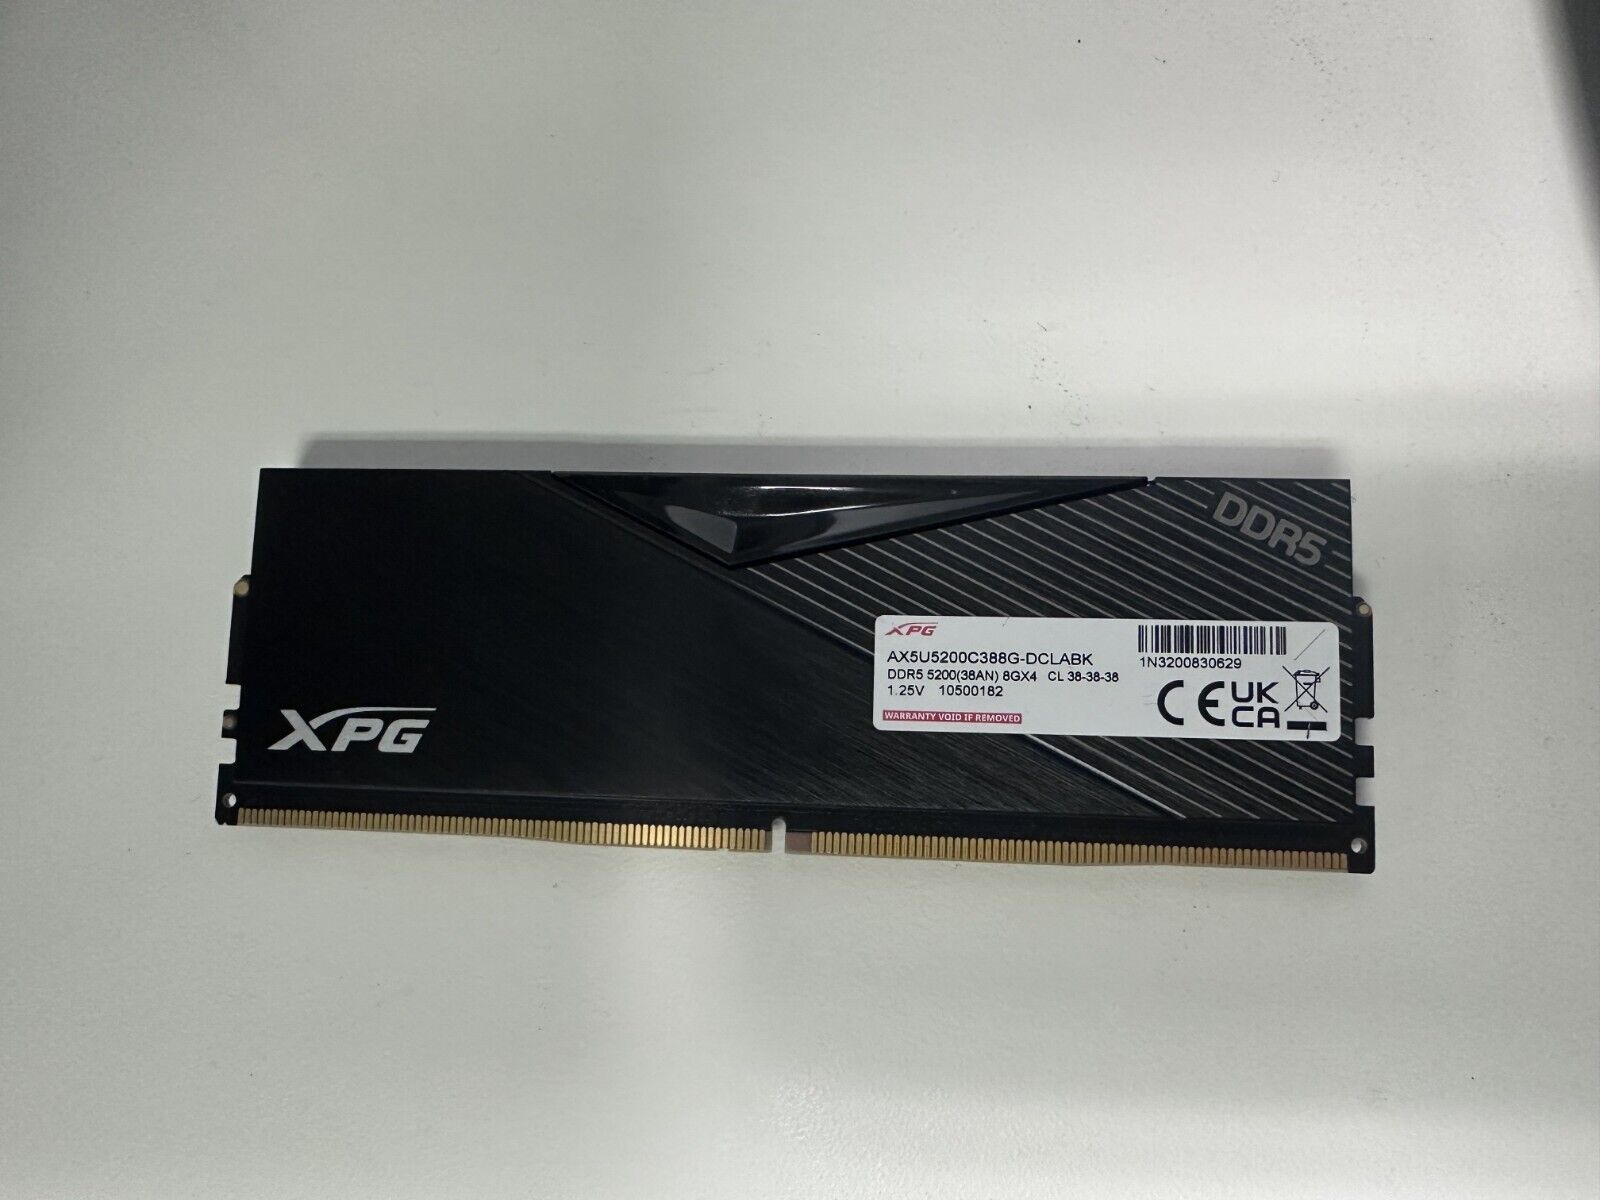 XPG DDR5 8GB RAM for Desktop, AX5U5200C388G-DCLABK, 5200(38AN) 8GX4 CL